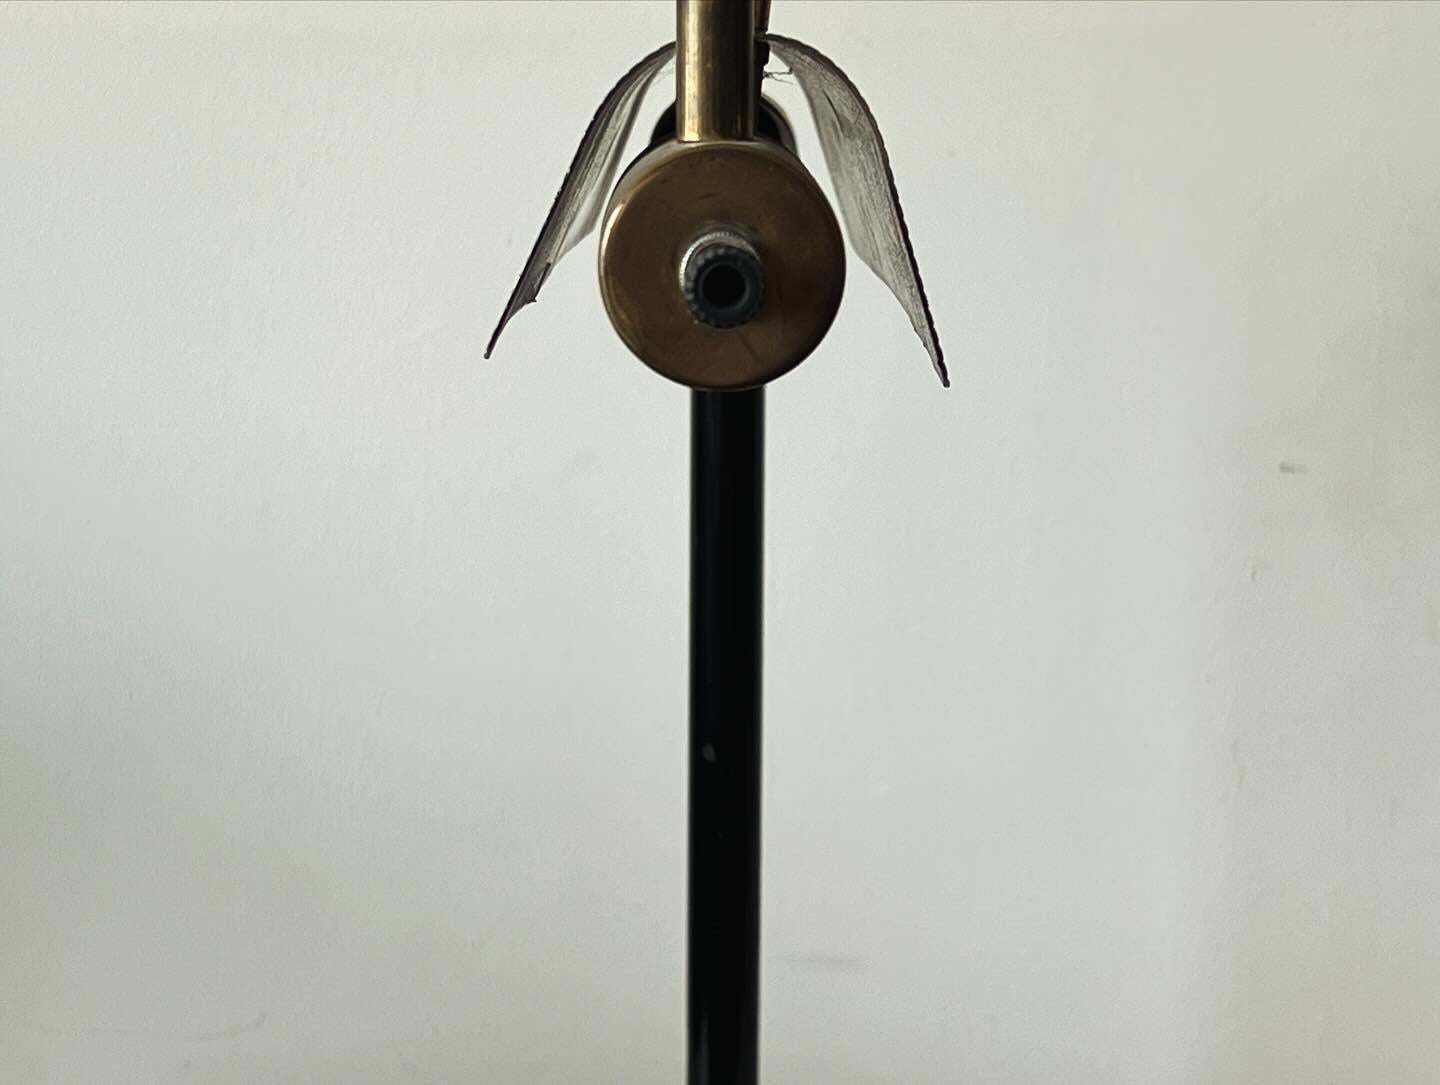 Une rareté  et inhabituelle lampe moderniste de Peter Pfisterer, vers les années 1940. L'abat-jour pivote pour orienter la lumière et la hauteur est réglable. Fabriqué en laiton et en aluminium peint. Architecte d'origine suisse, Peter Pfisterer a